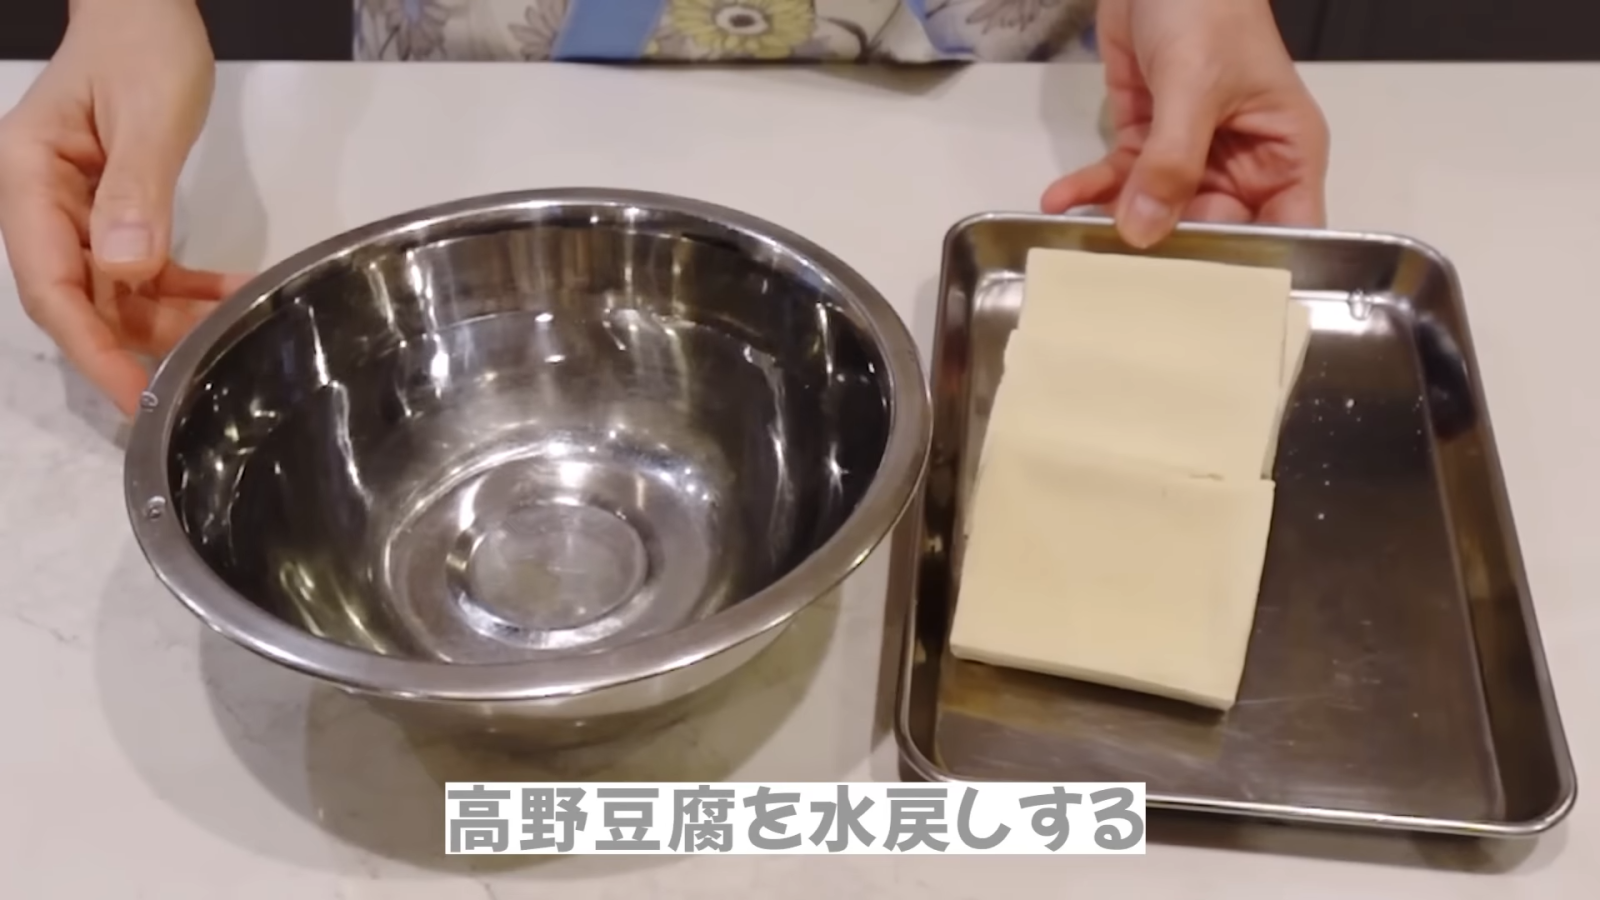 高野豆腐を水で戻す女性